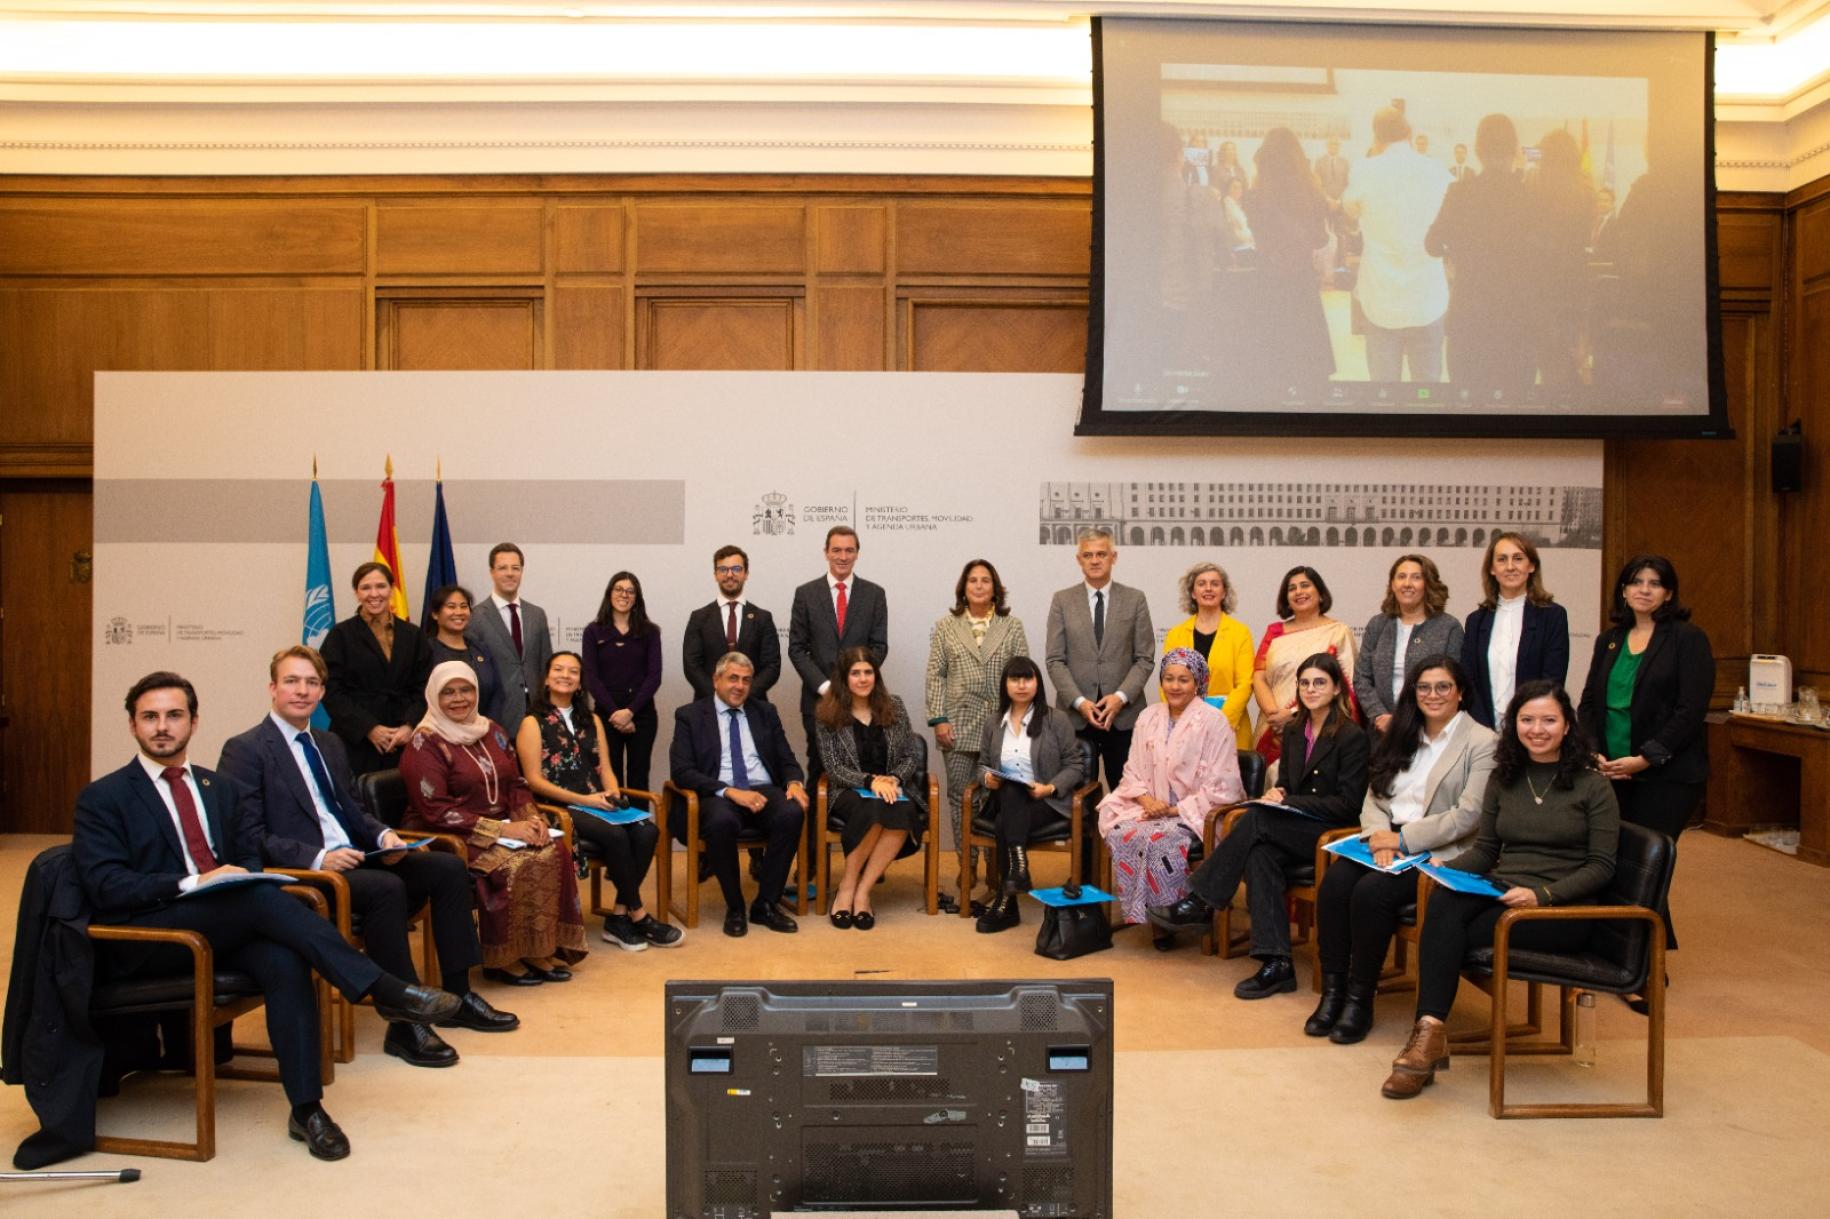 Los defensores de los jóvenes se reunieron con la Vicesecretaria General de las Naciones Unidas, Amina Mohammed, en el evento de liderazgo local de los jóvenes para avanzar en el diálogo sobre los ODS en Madrid, España.